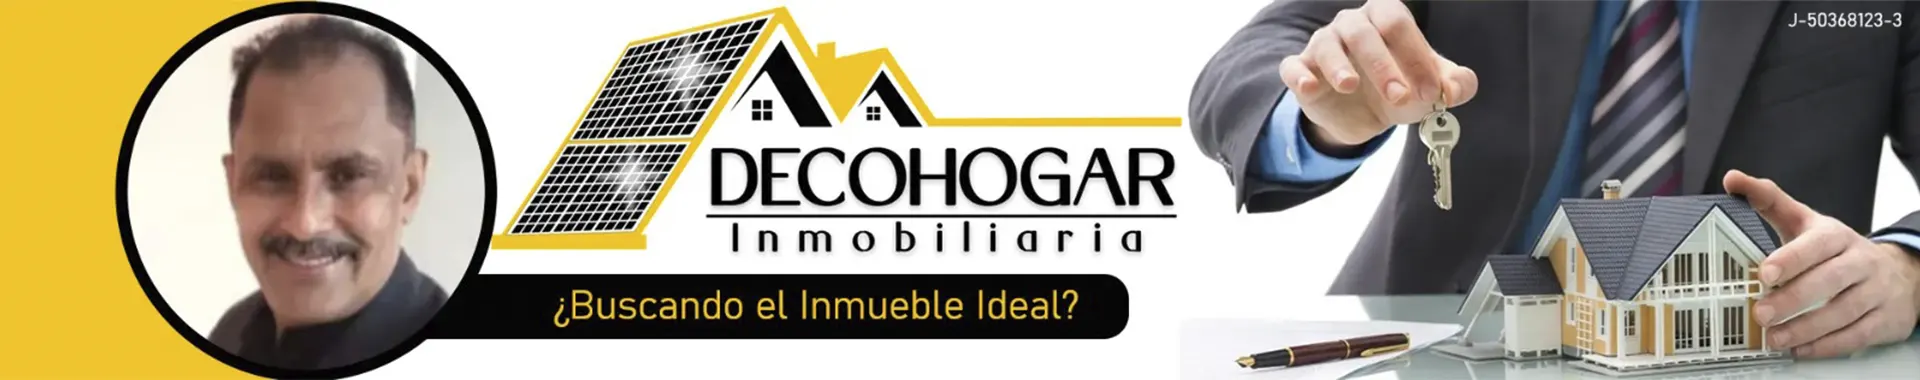 Imagen 1 del perfil de Decohogar Inmobiliaria